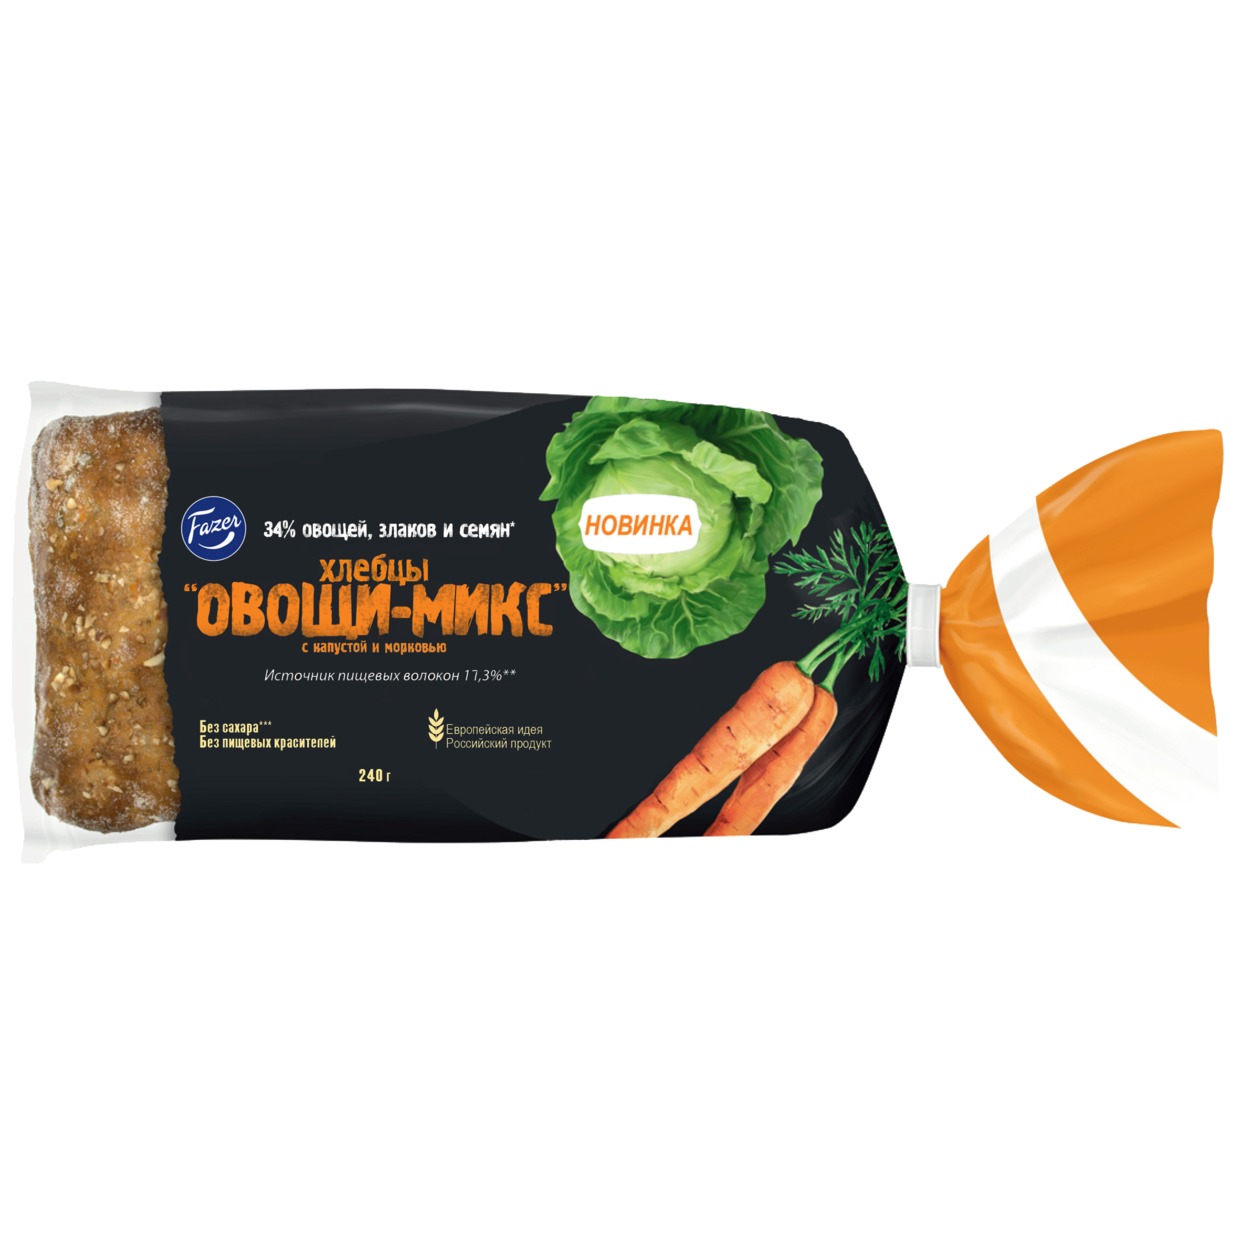 Хлебцы Fazer Овощи-Микс c капустой и морковью 4 шт.*60 г 240 г